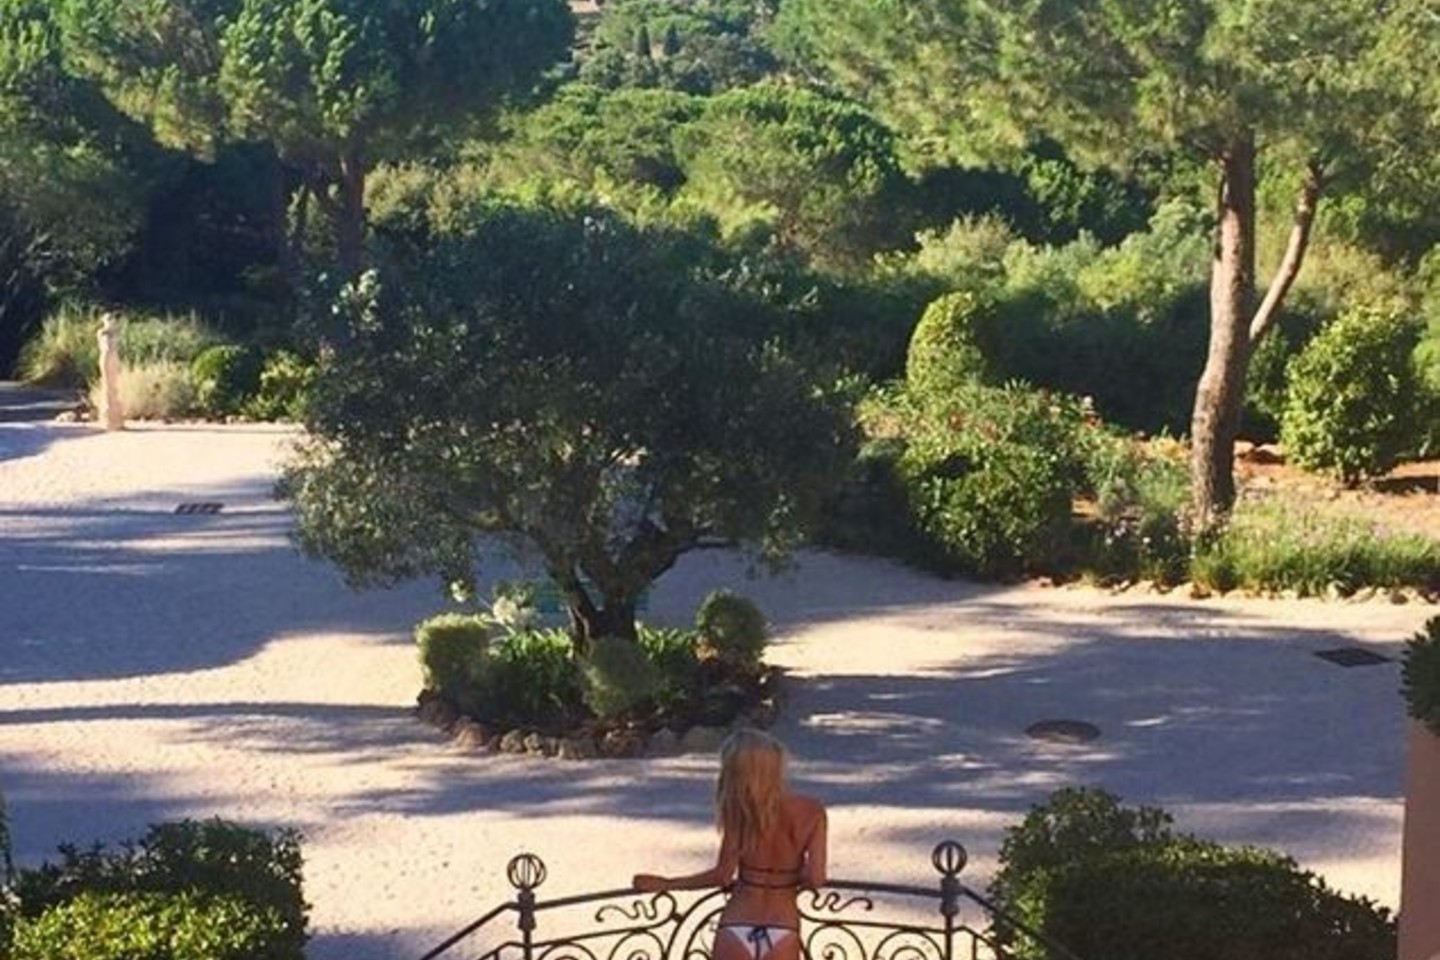 Kimberley Garner savo bikinių liniją nusprendė pareklamuoti ir per atostogas.<br>„Instagram“ nuotr.